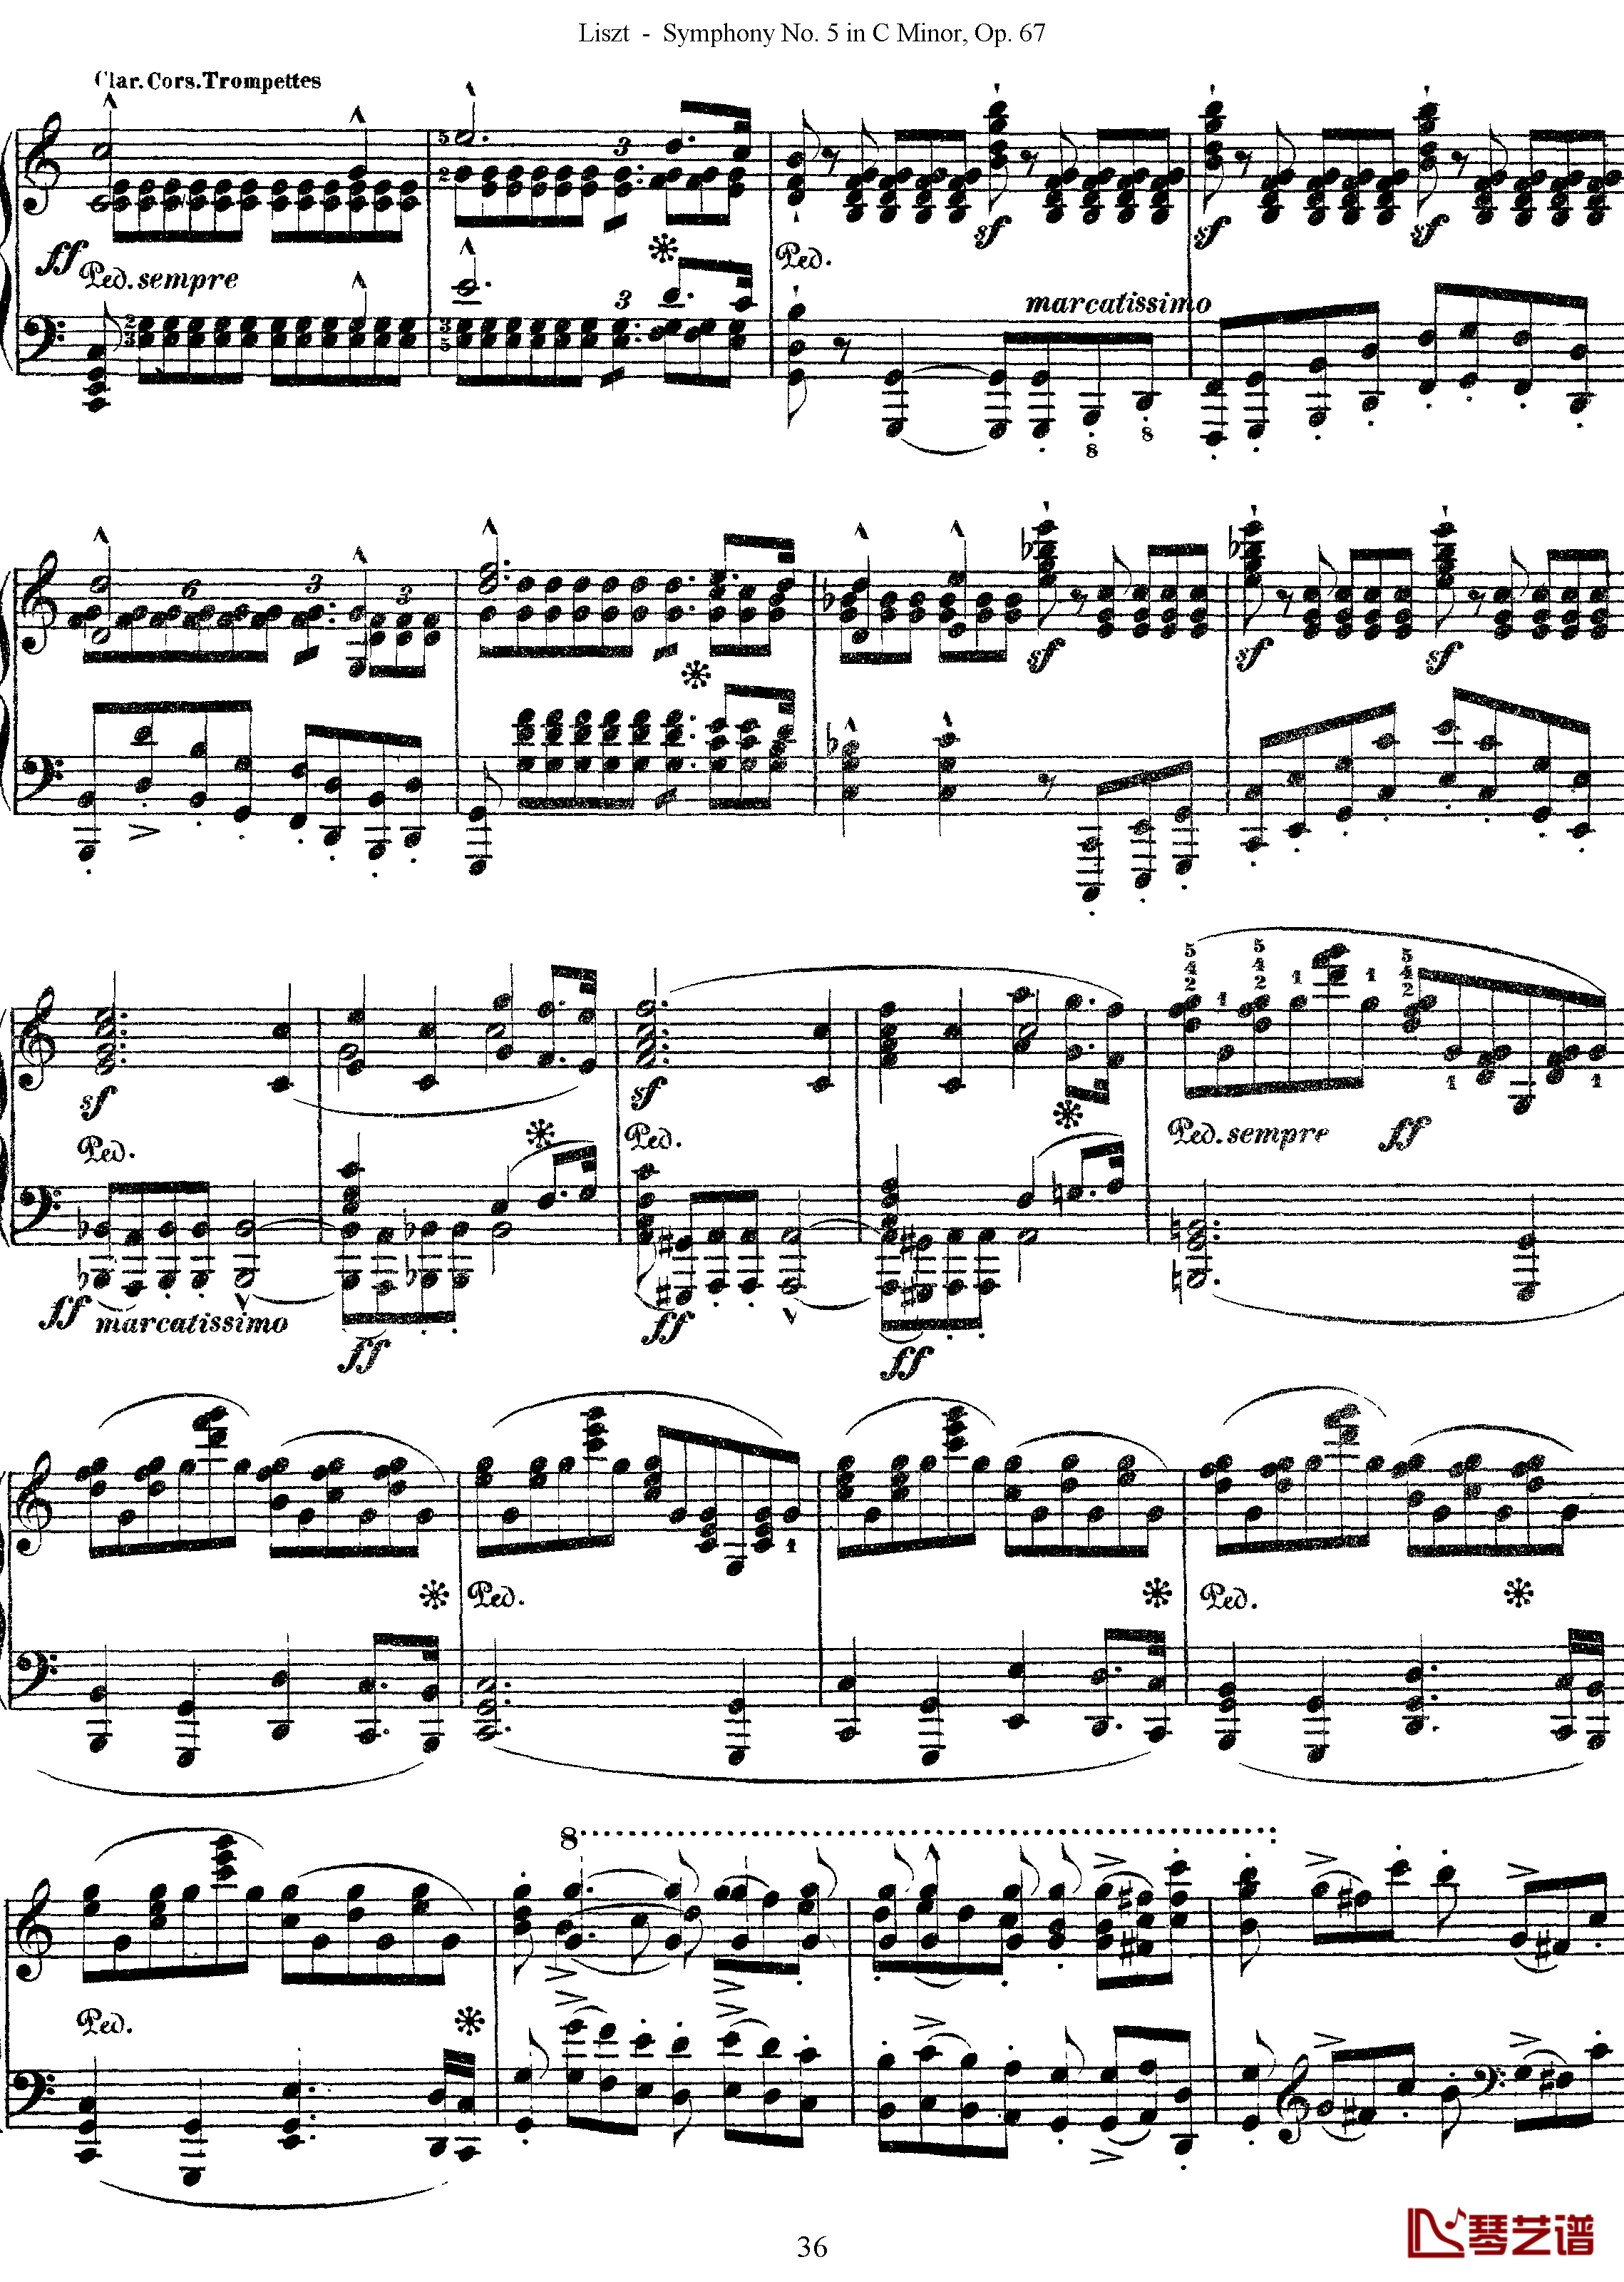 第五交响乐的钢琴曲钢琴谱-李斯特-李斯特改编自贝多芬36